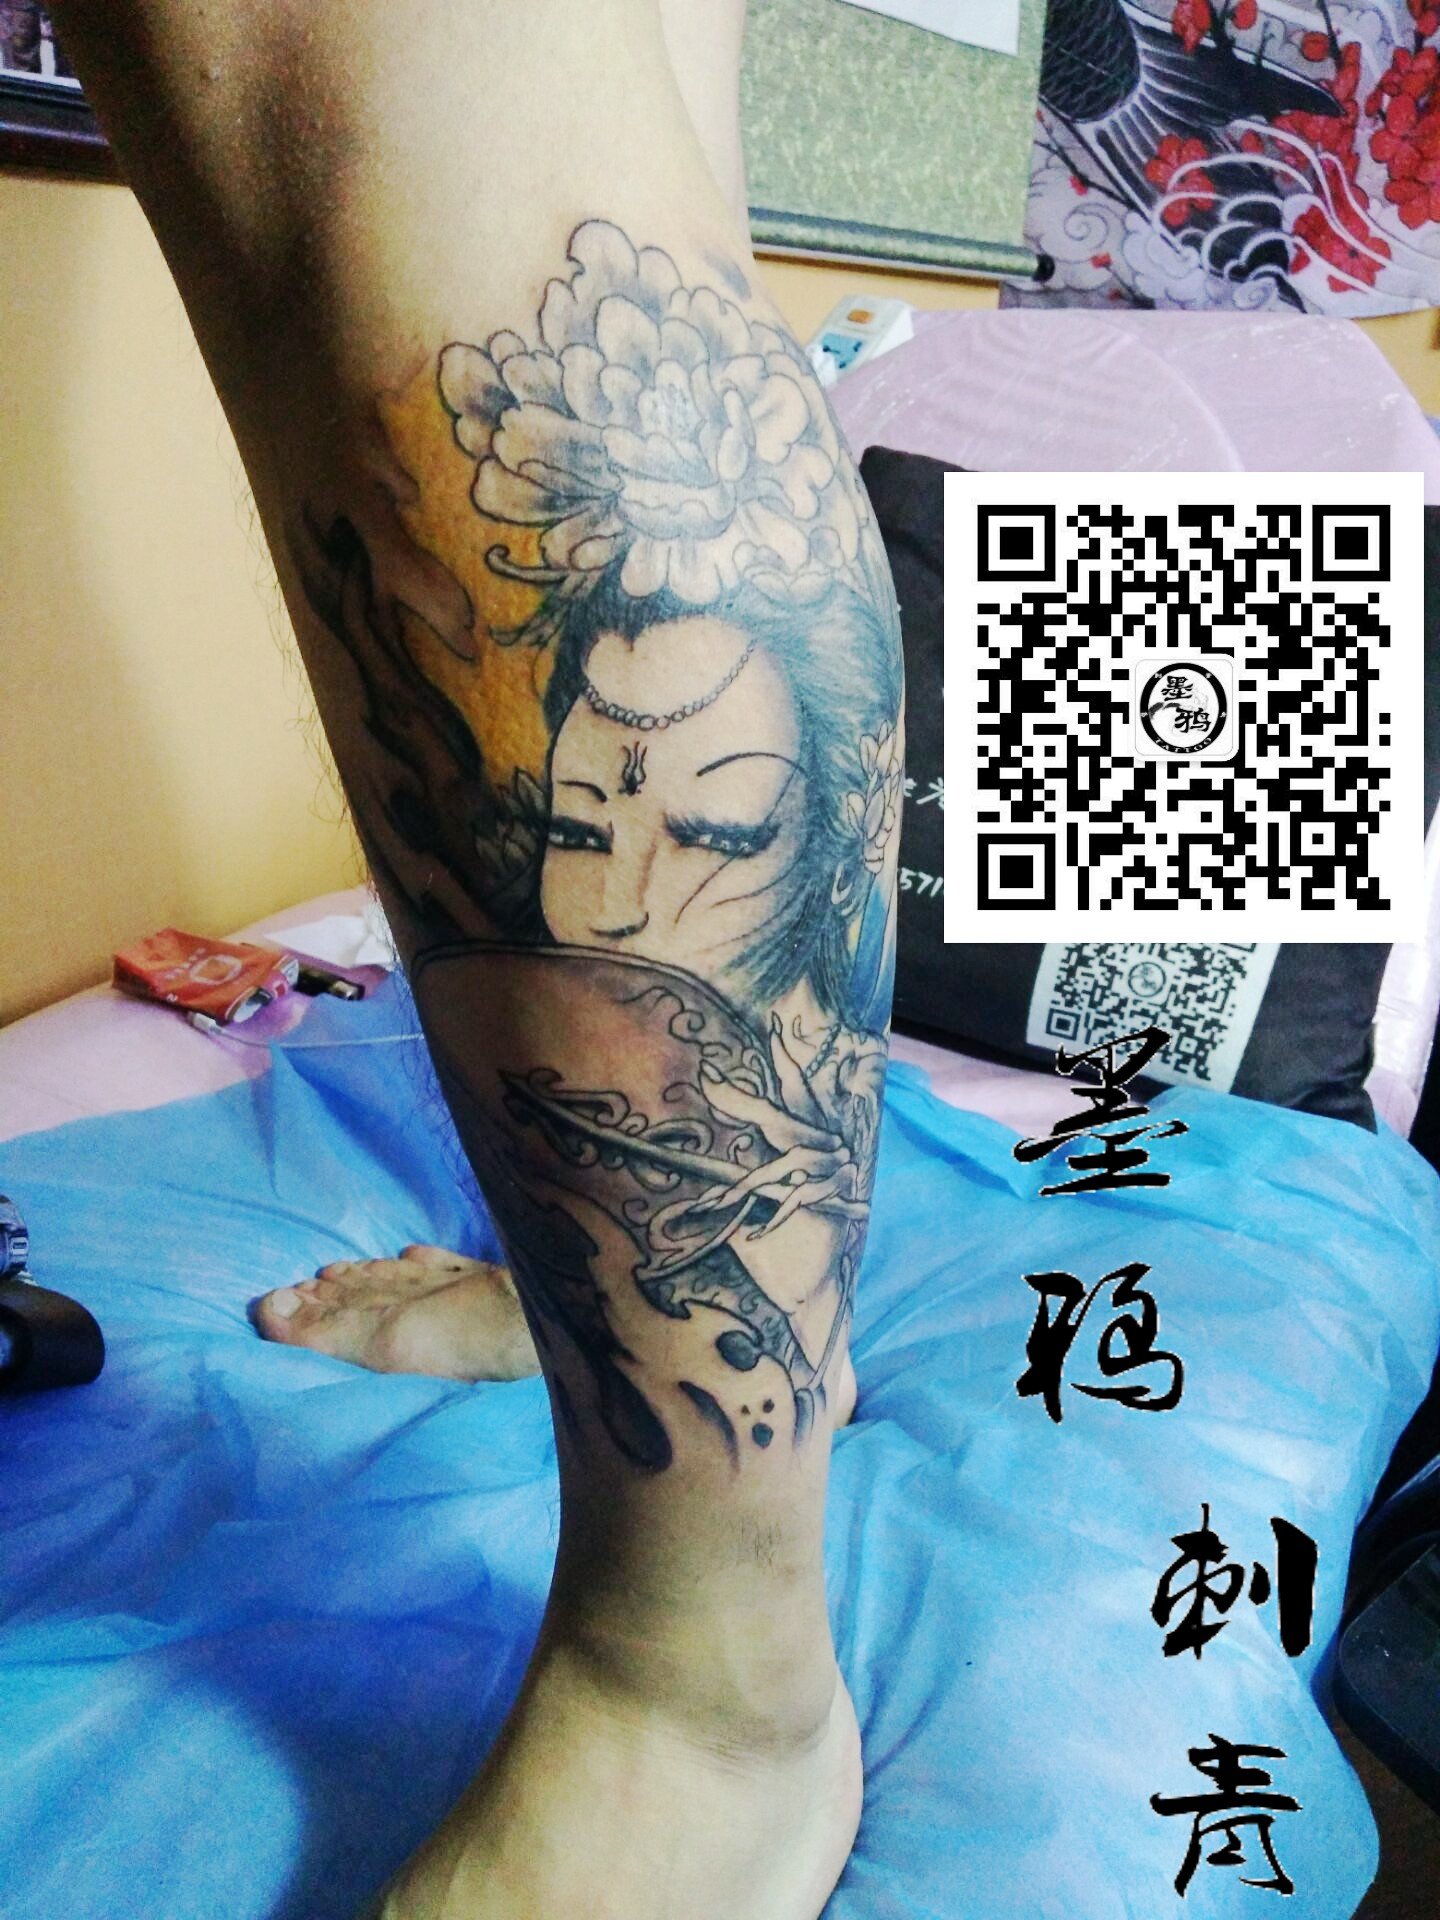 小腿艺妓纹身图案  墨鸦刺青